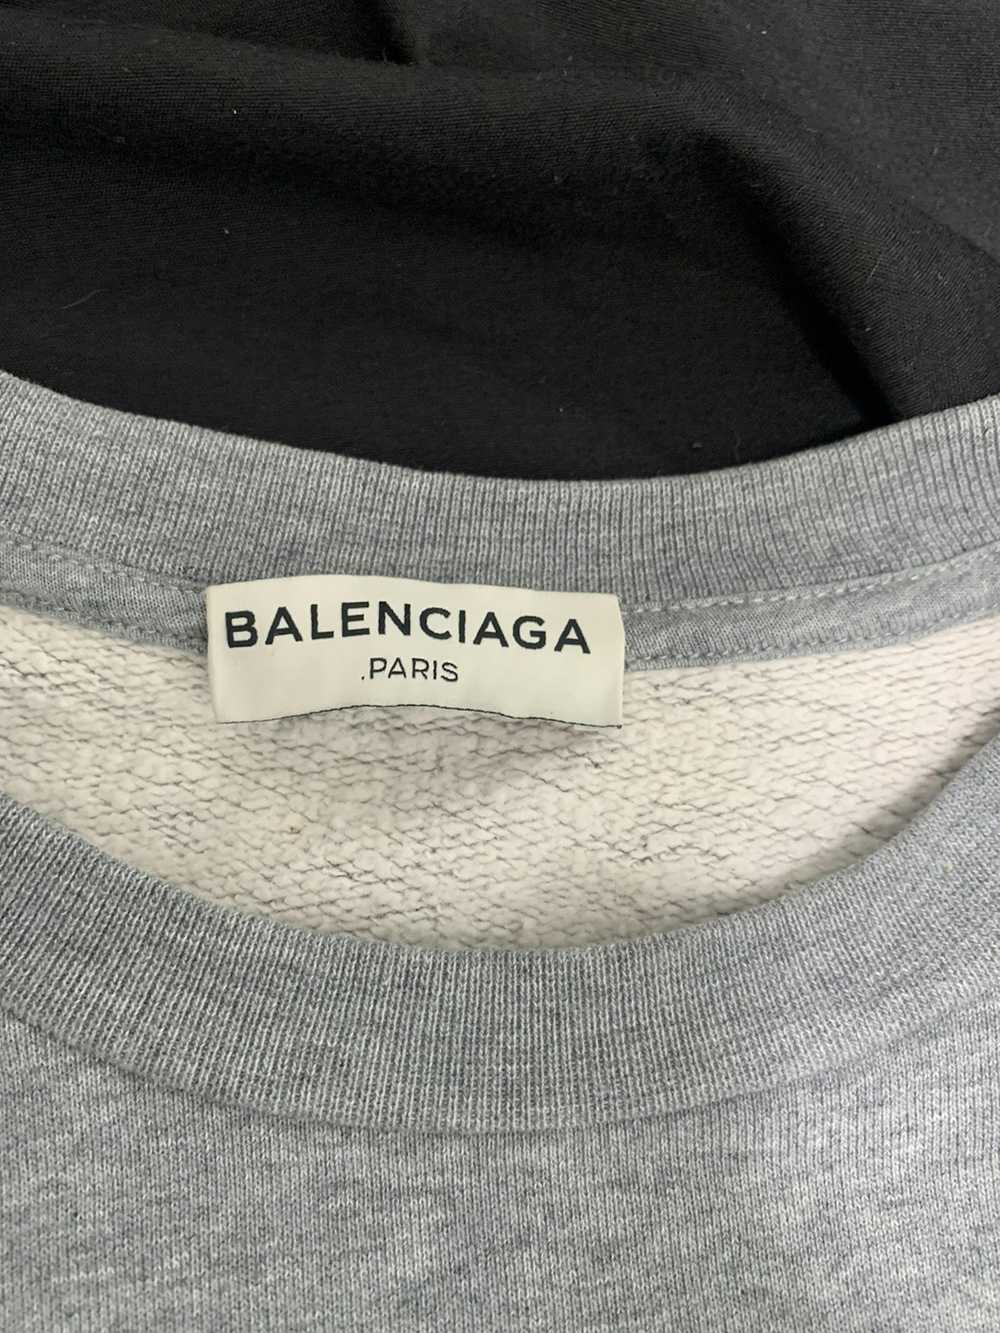 Balenciaga *Rare* Balenciaga Gray Long Sleeve Swe… - image 3